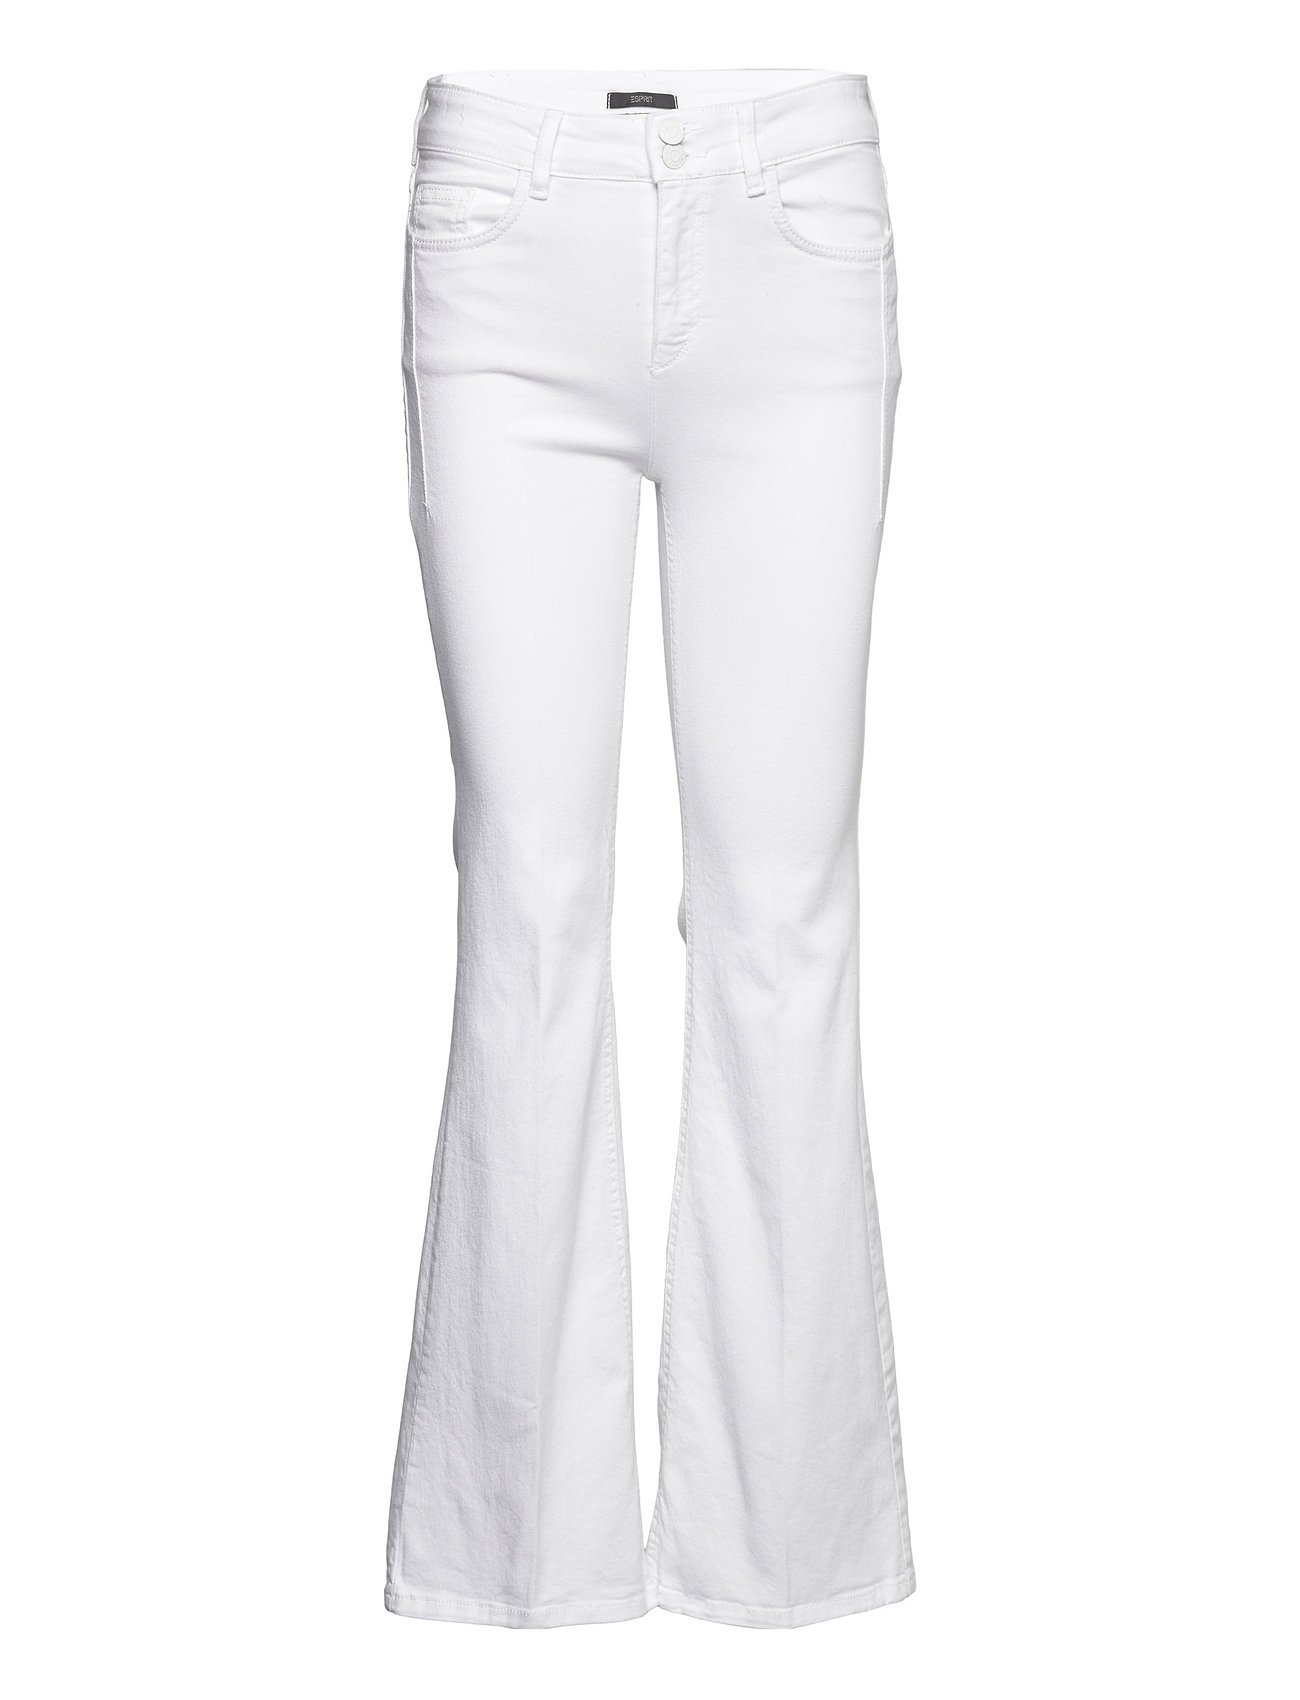 ESPRIT - Bootcut jeans at our online shop